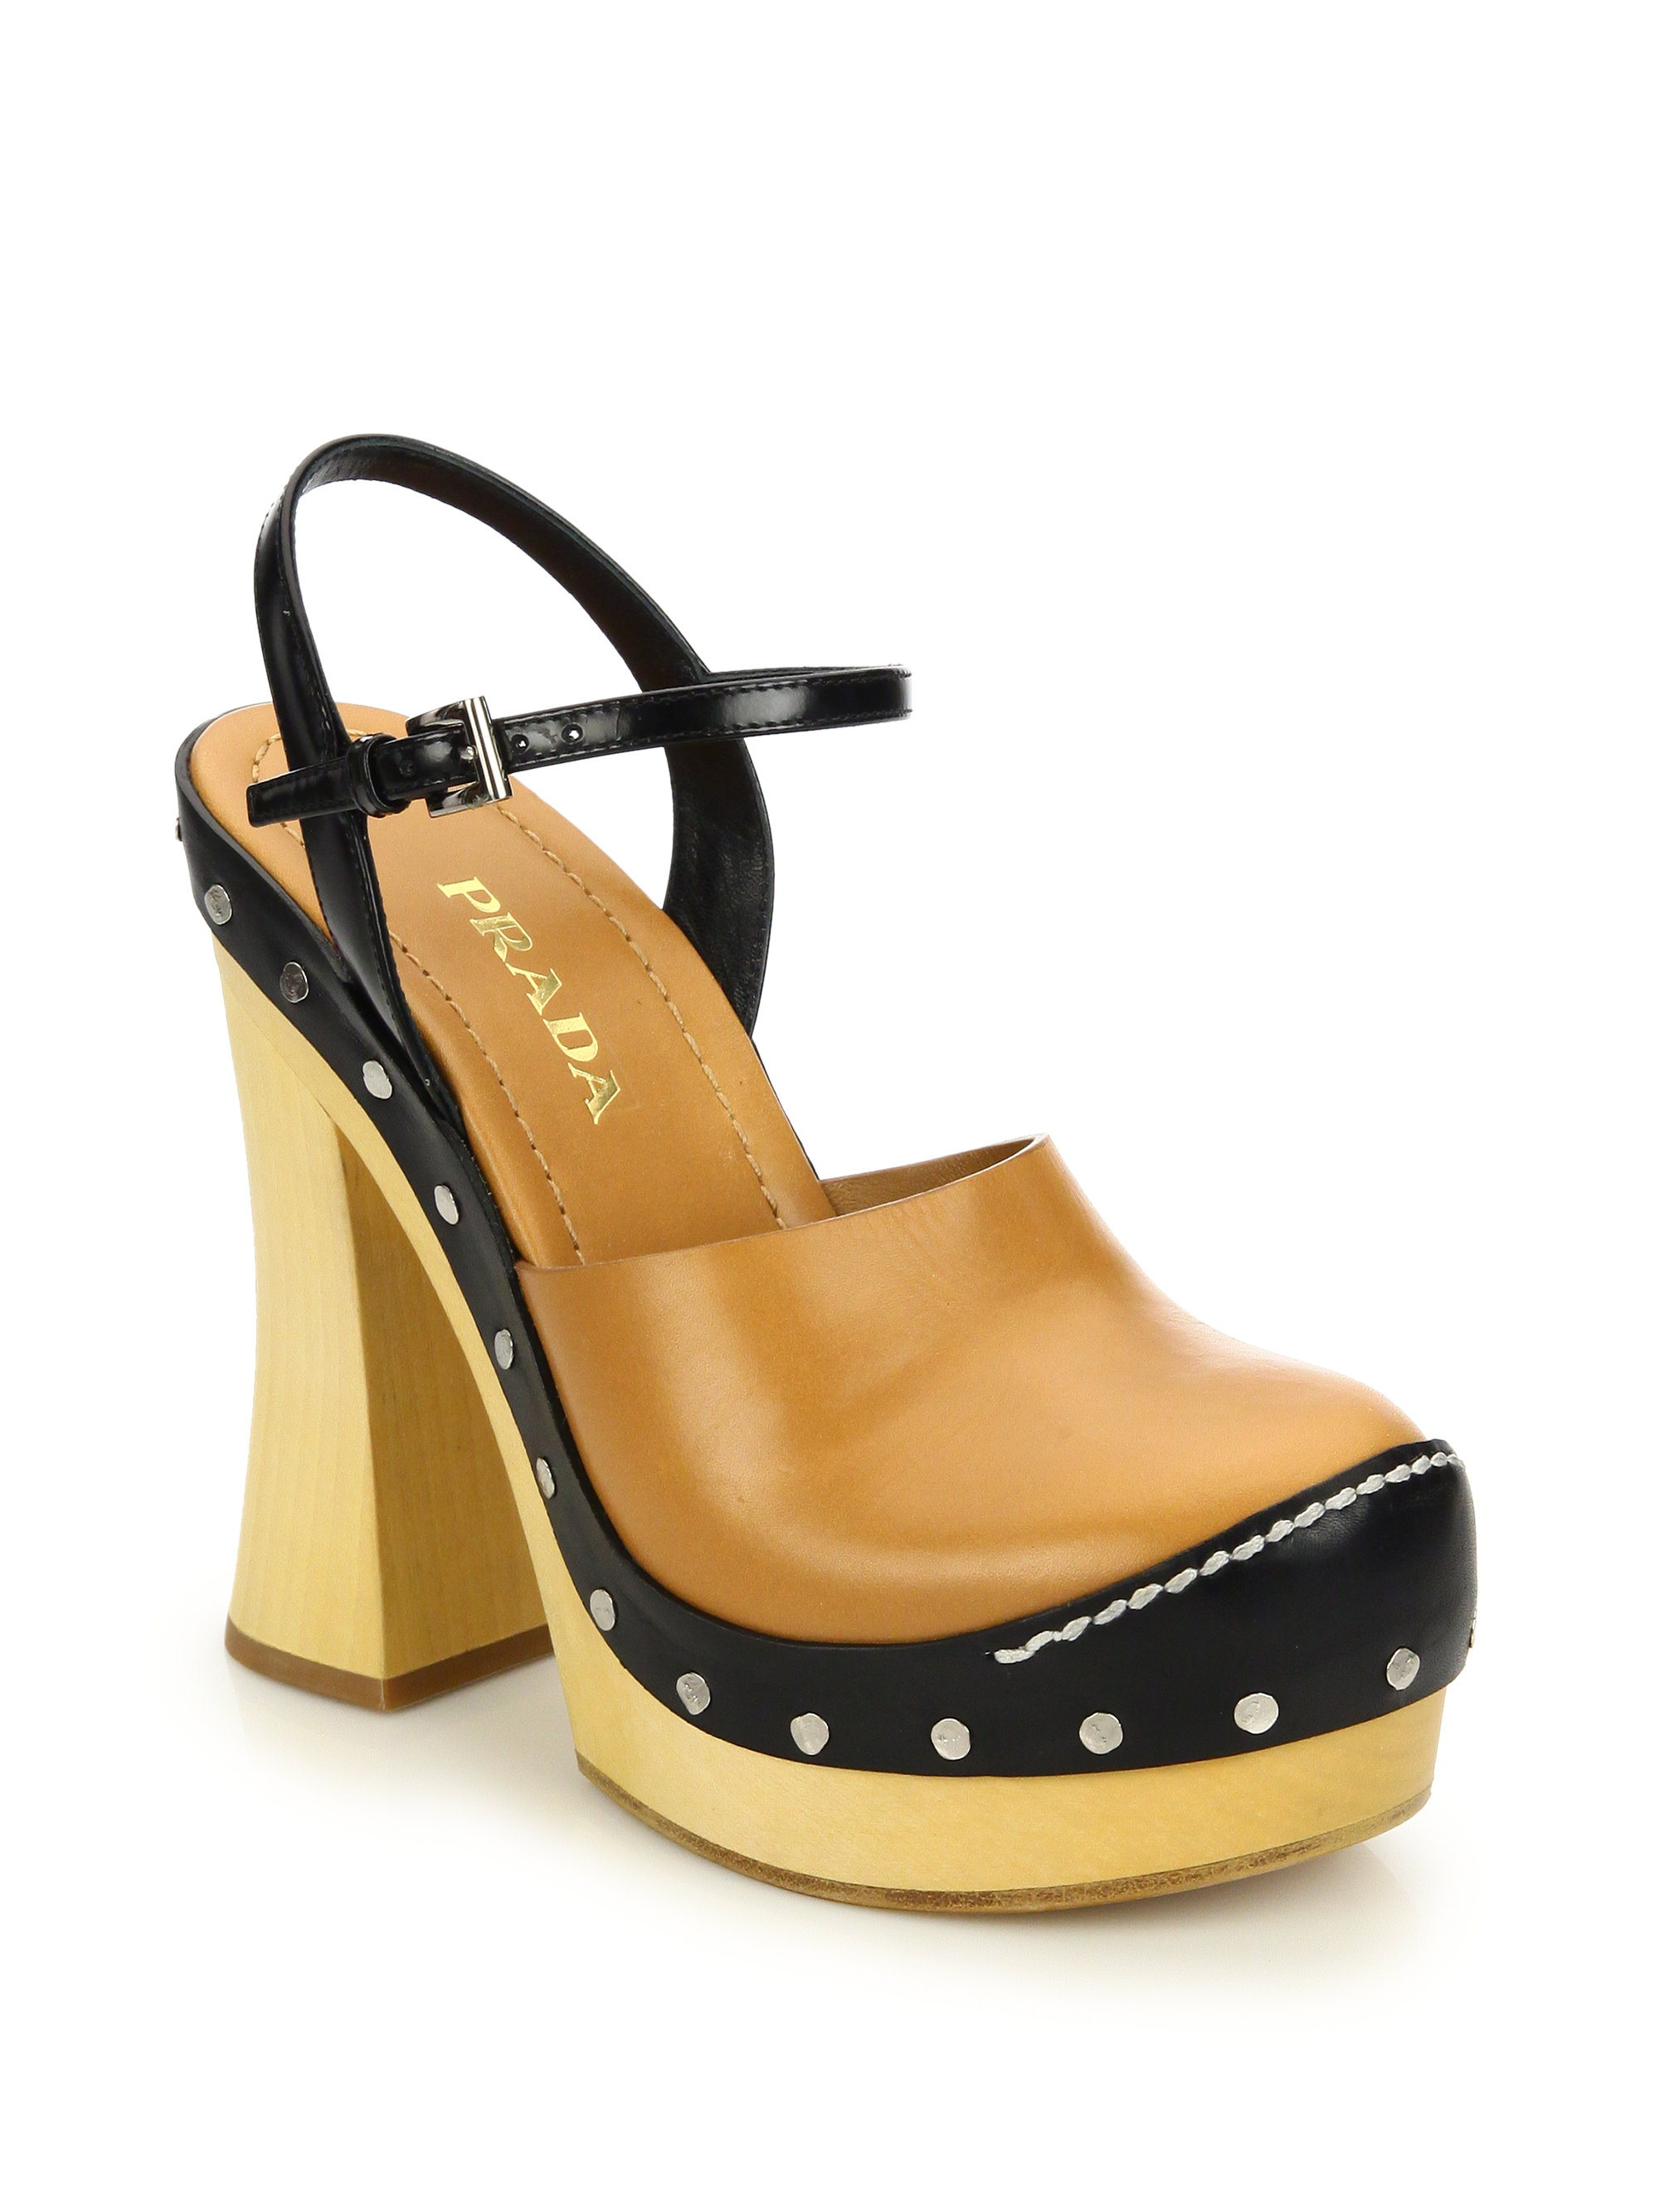 Prada Wooden-Heeled Leather Platform Sandals in Brown | Lyst